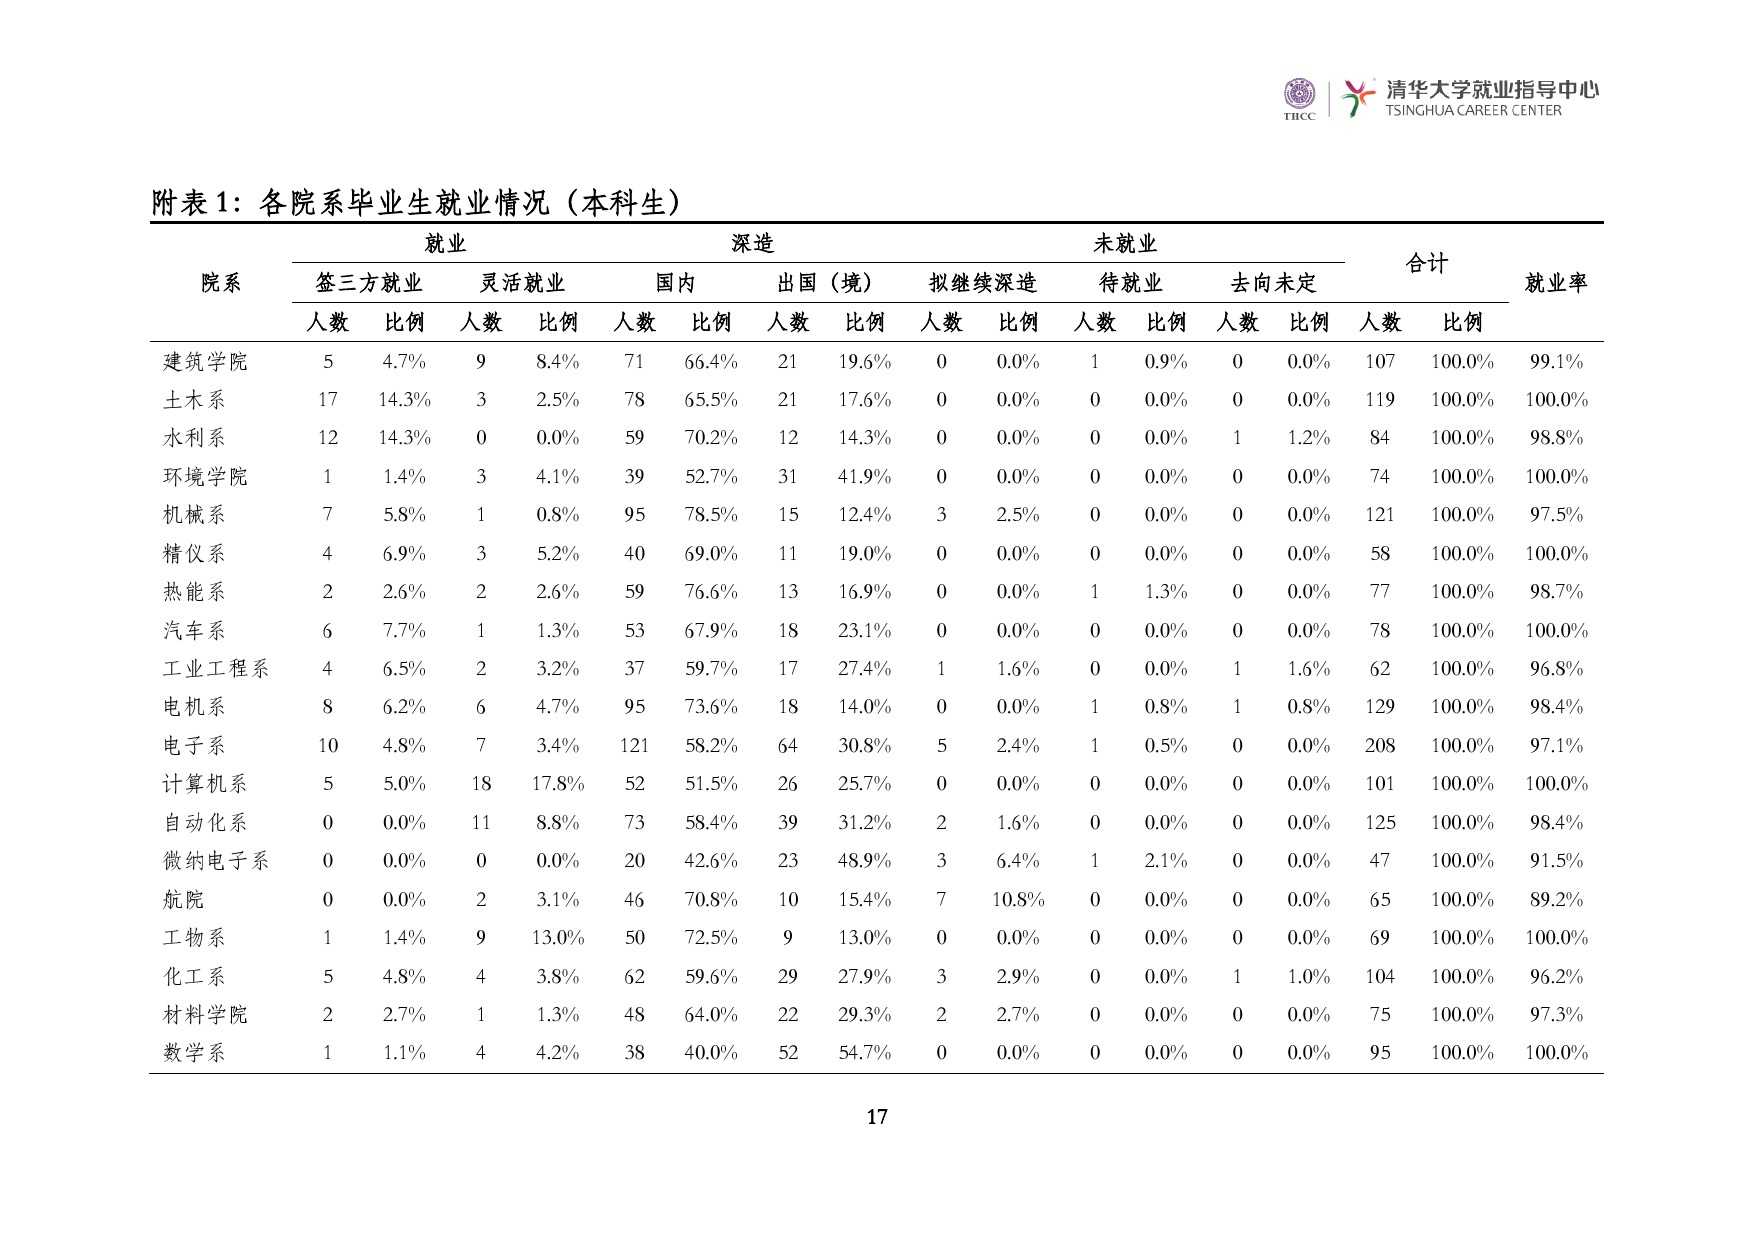 清華大學2014 年畢業生就業質量報告_000019